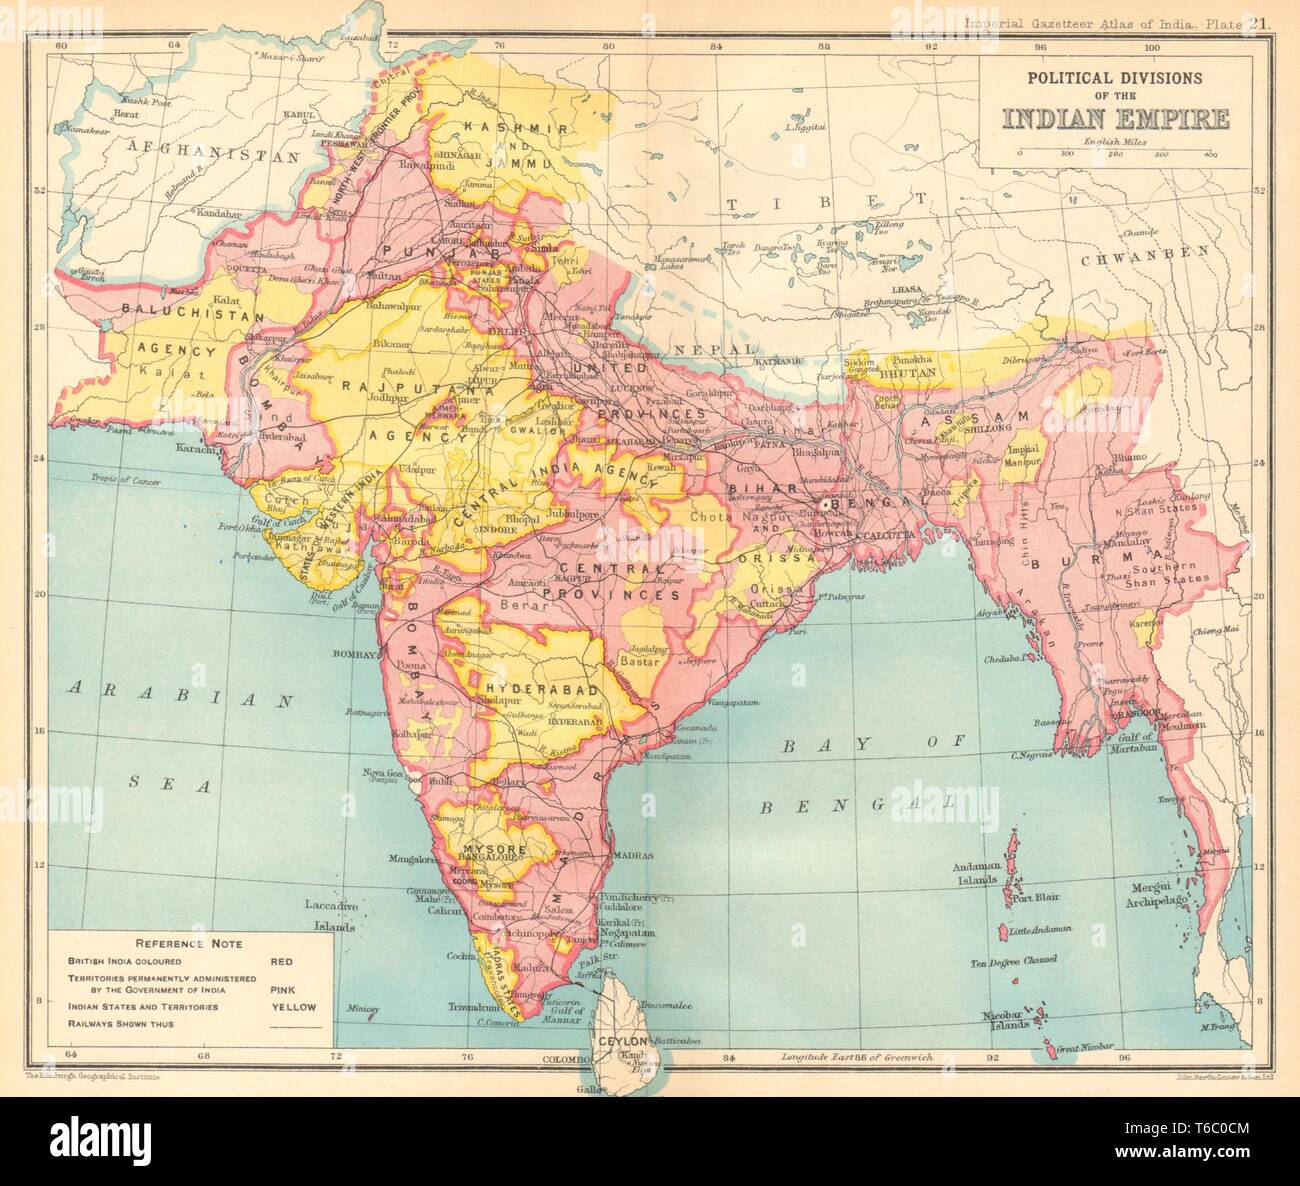 Les divisions politiques de l'Inde britannique. Etats indiens 1931 old vintage carte graphique Banque D'Images